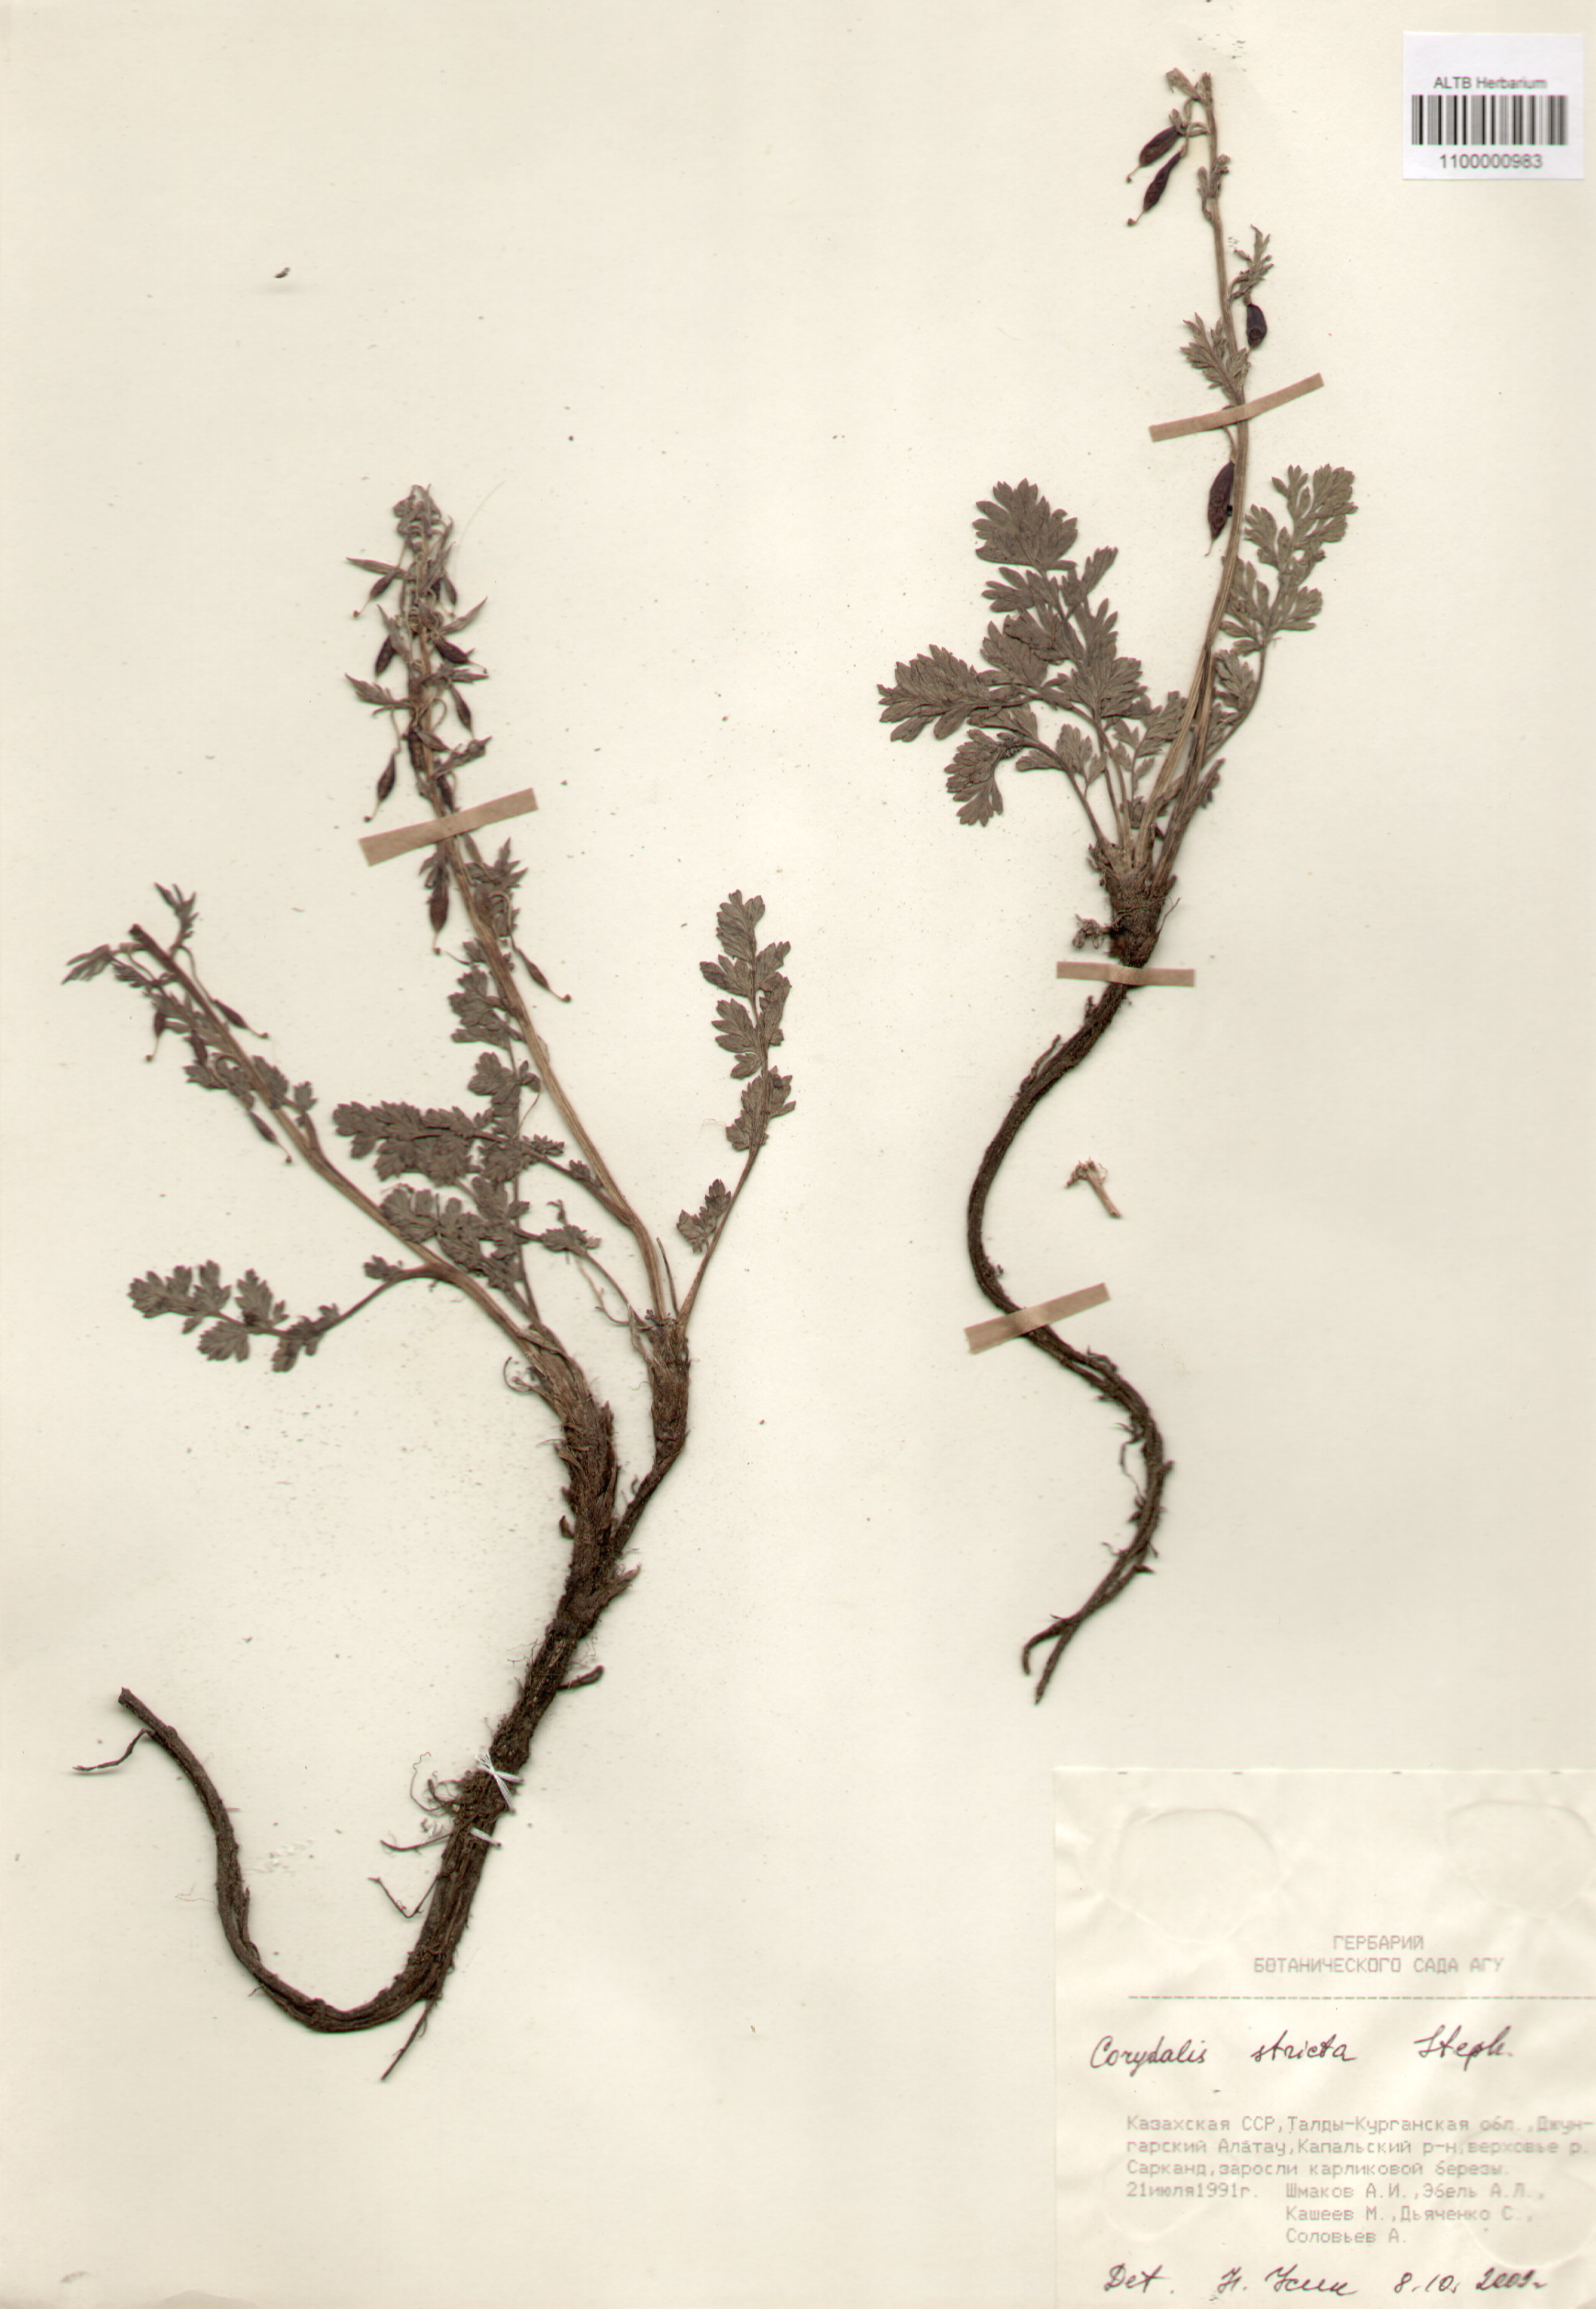 Fumariaceae,Corydalis stricta Steph. ex Fisch.